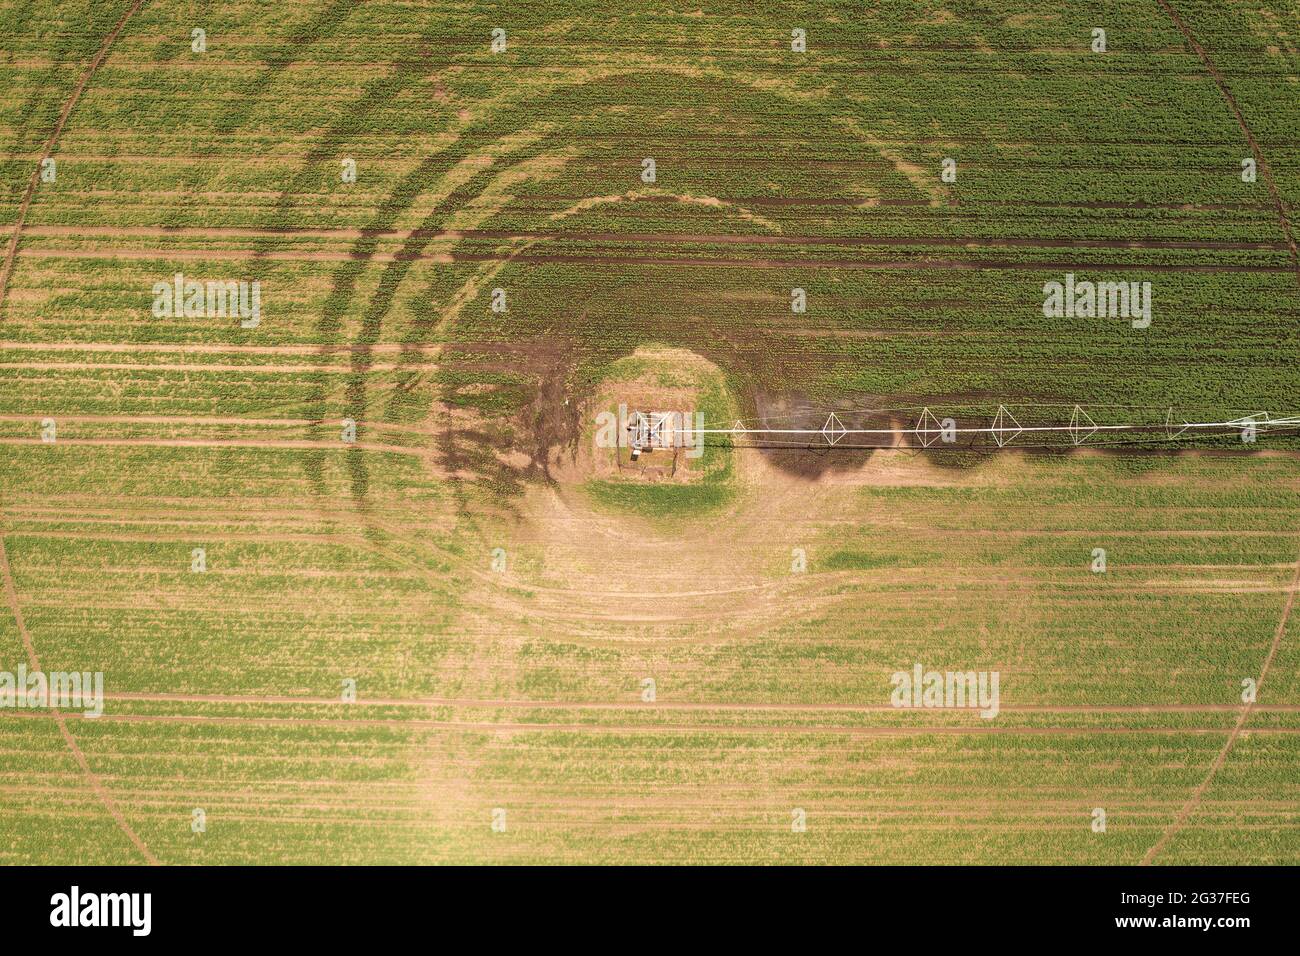 Vista aerea dell'attrezzatura di irrigazione del perno centrale che innaffia le piantine verdi di soia su piantagione di fattoria, video di pov del drone Foto Stock